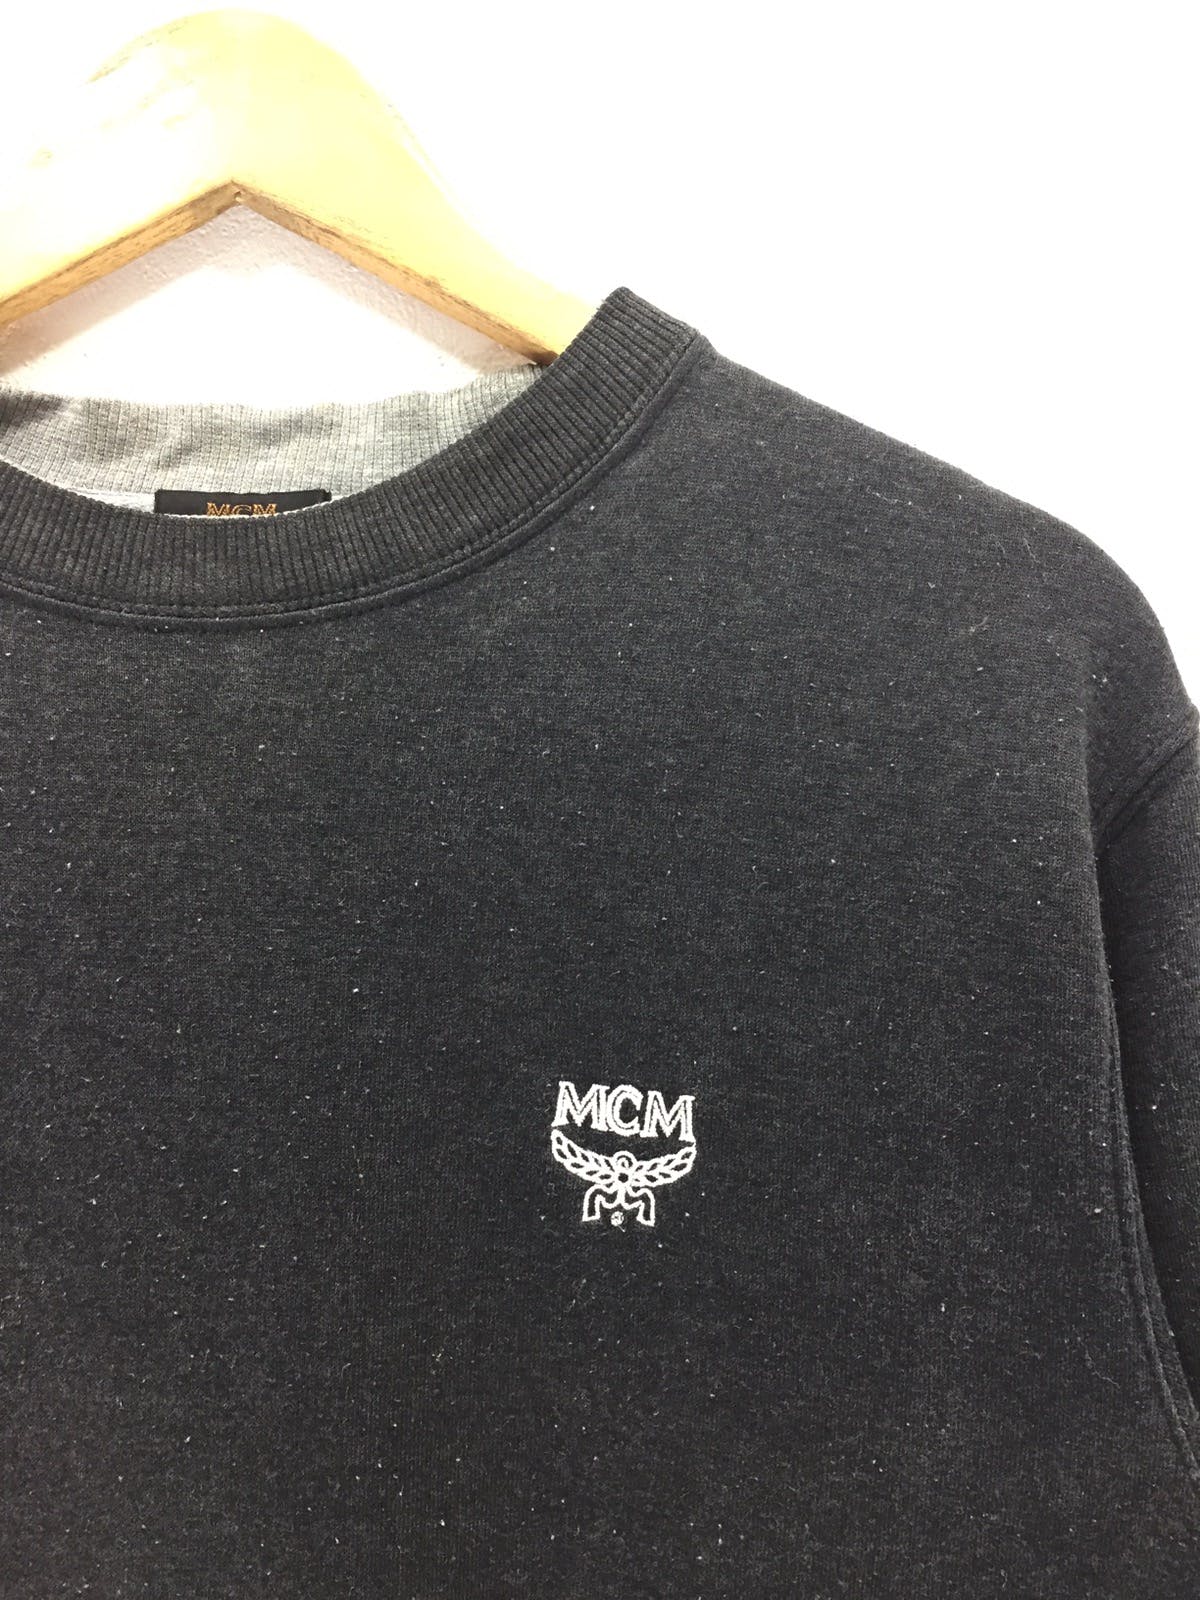 Mcm Small Logo Jumper Pullover Sweatshirt - 2